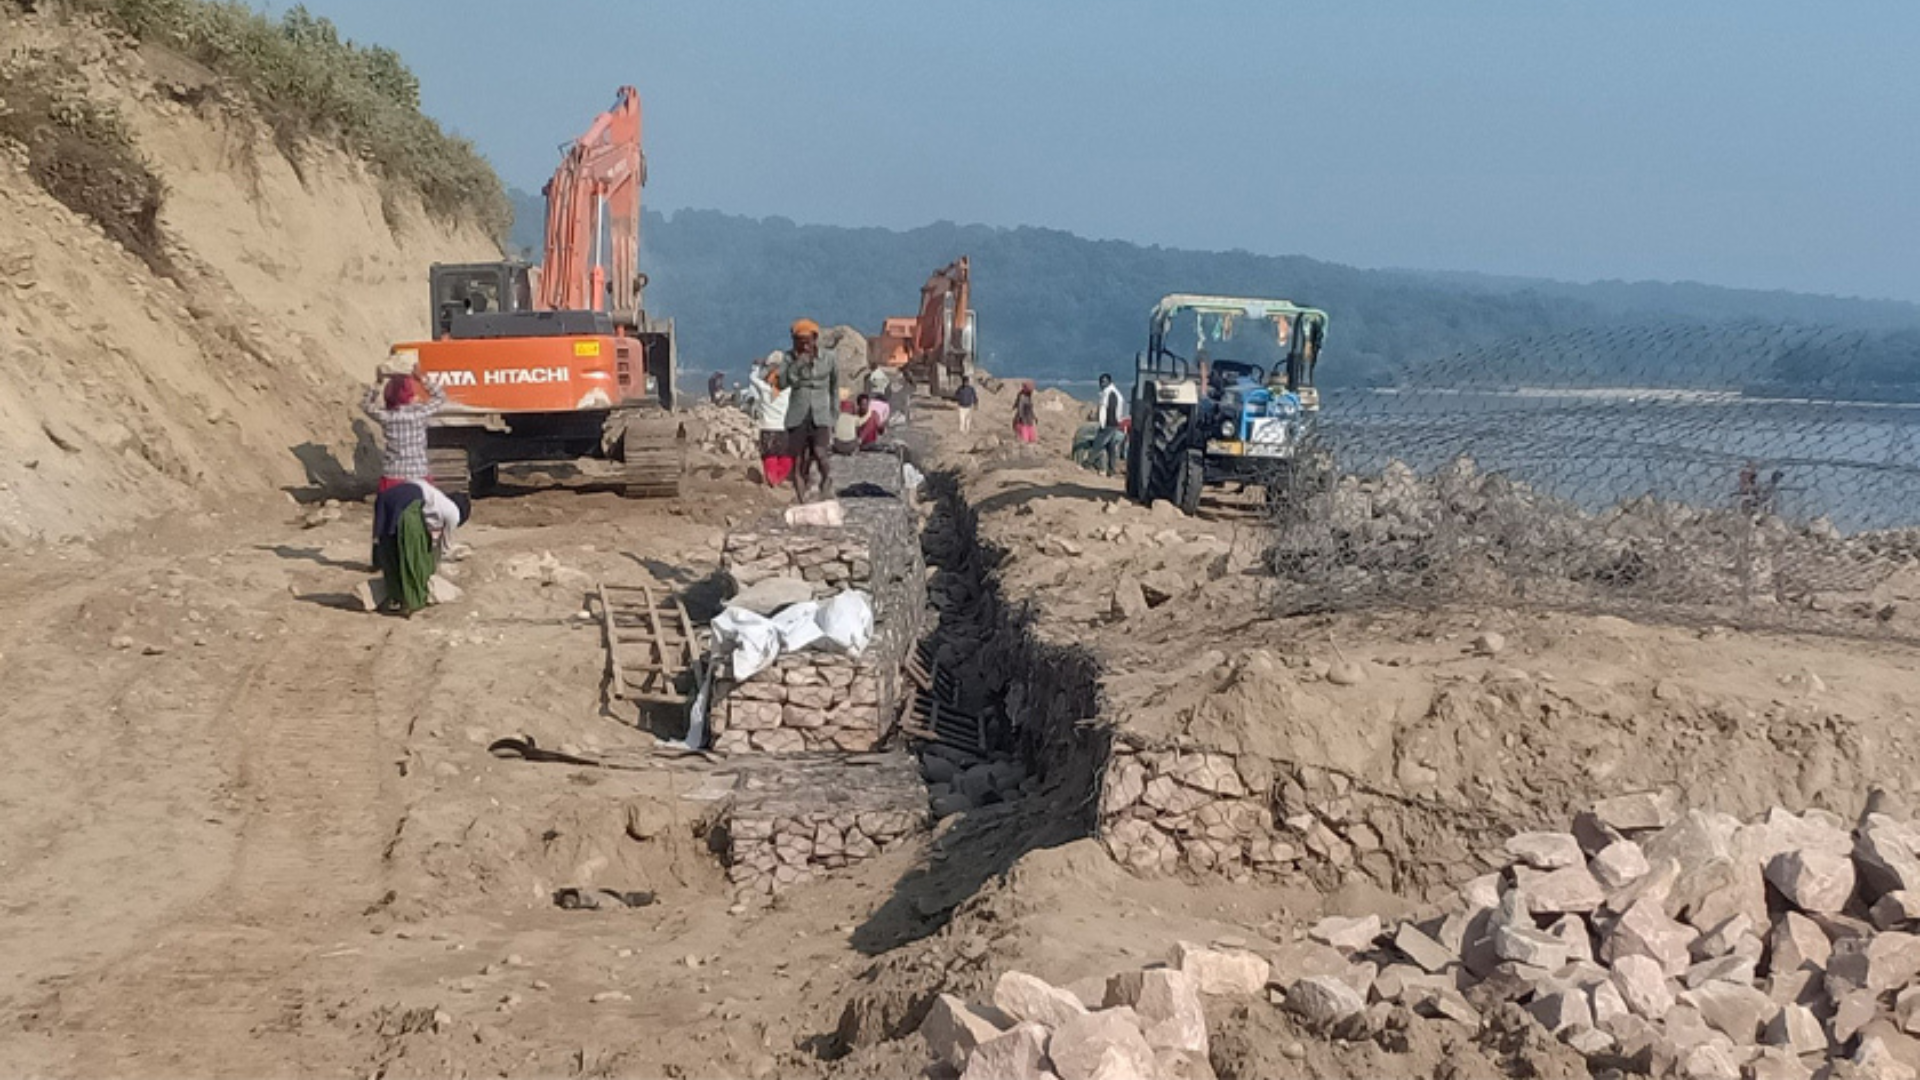 नारायणी नदीमा ब्यूटिफिकेशन एण्ड प्रोटेक्सन बाँध निर्माण गर्दै भारत